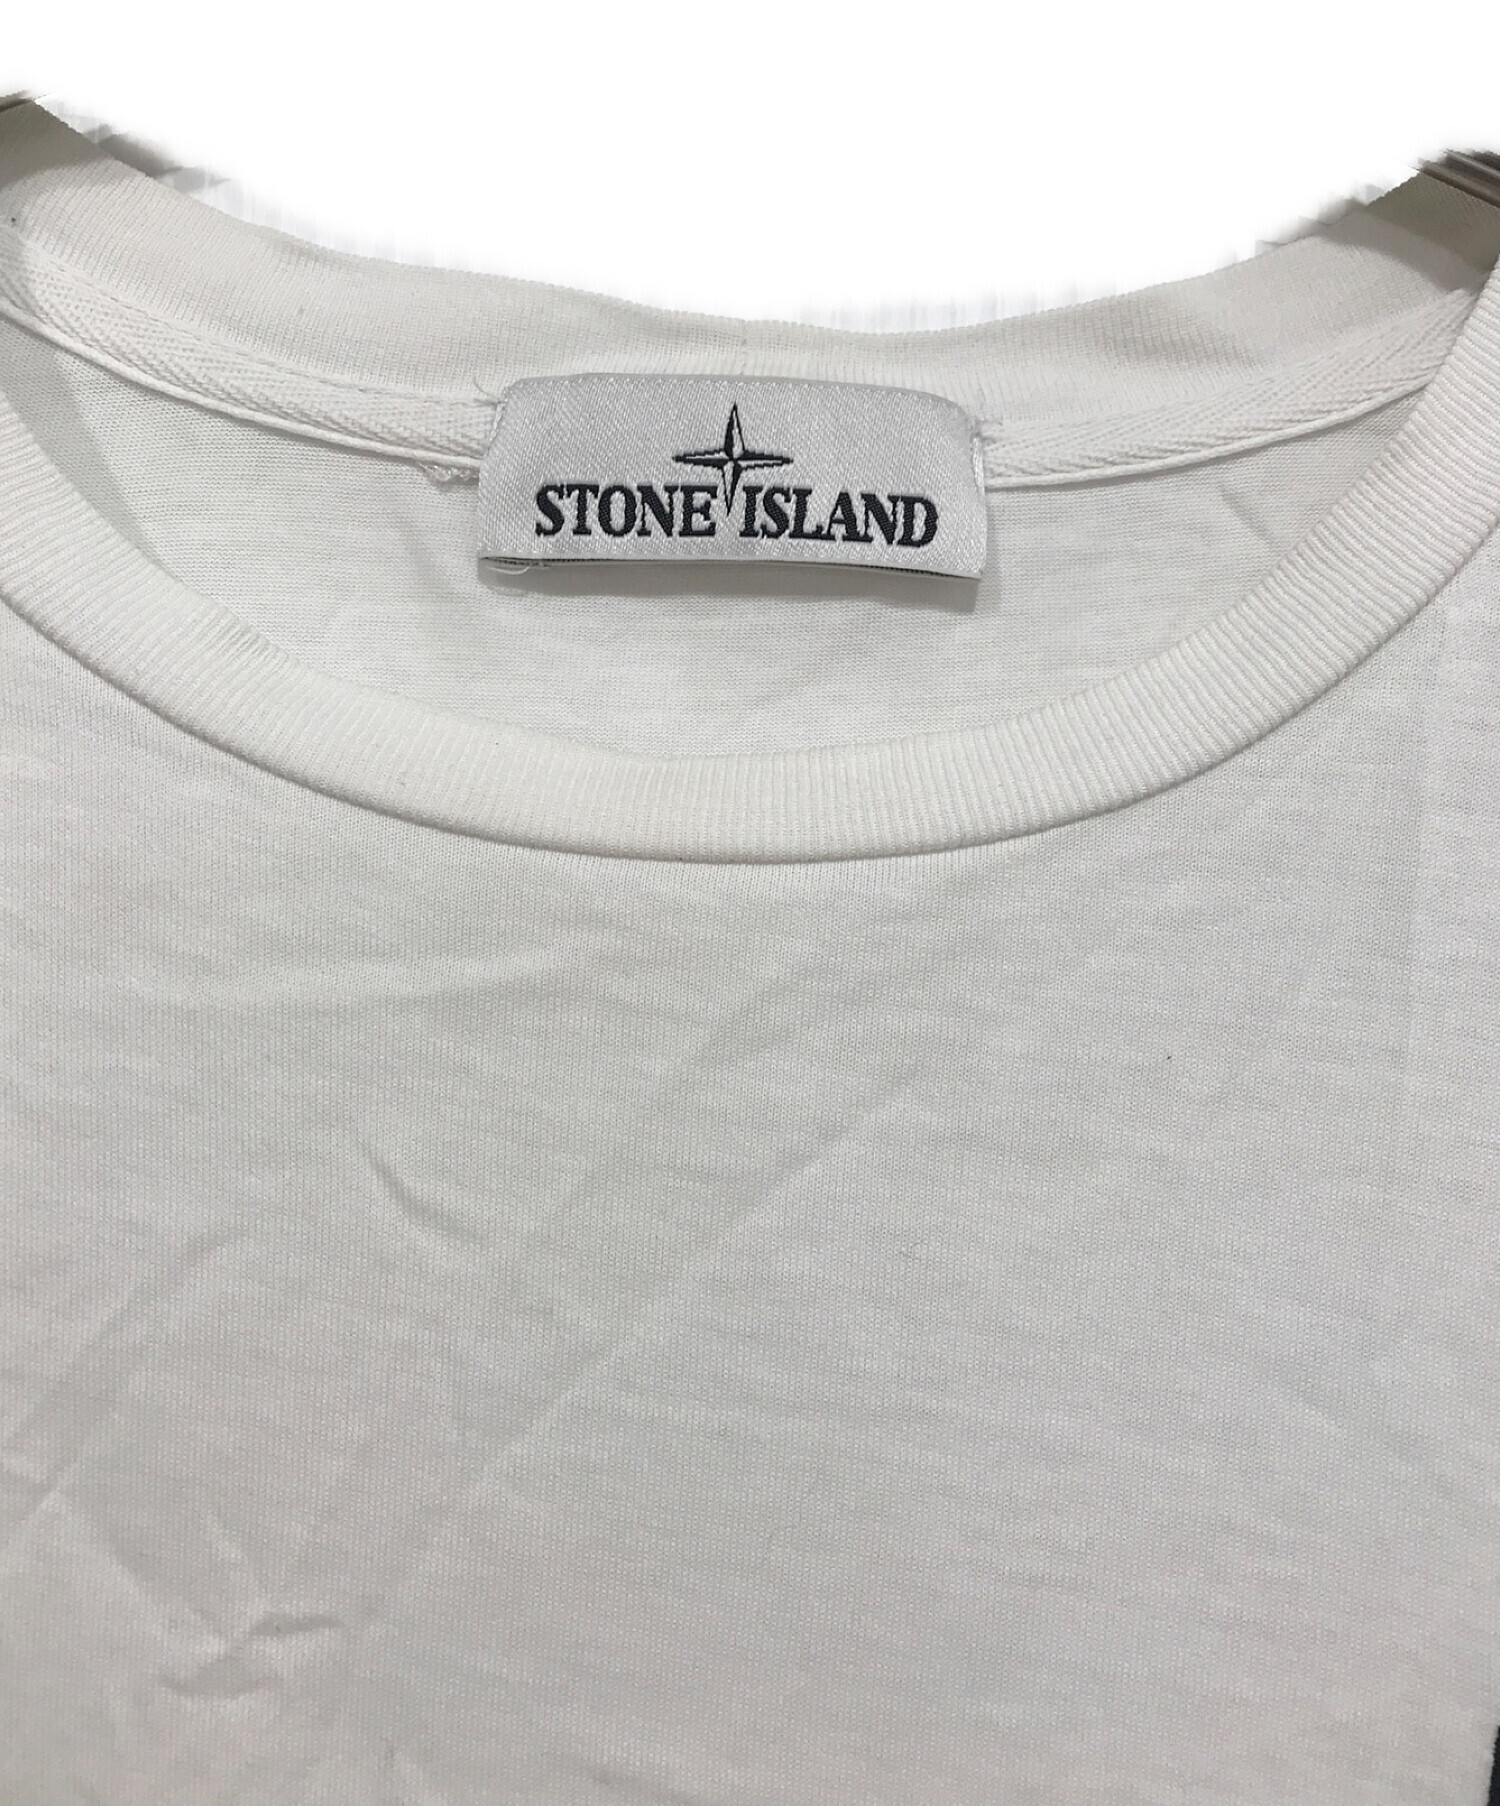 STONE ISLAND (ストーンアイランド) ワンポイントロゴTシャツ ホワイト サイズ:S